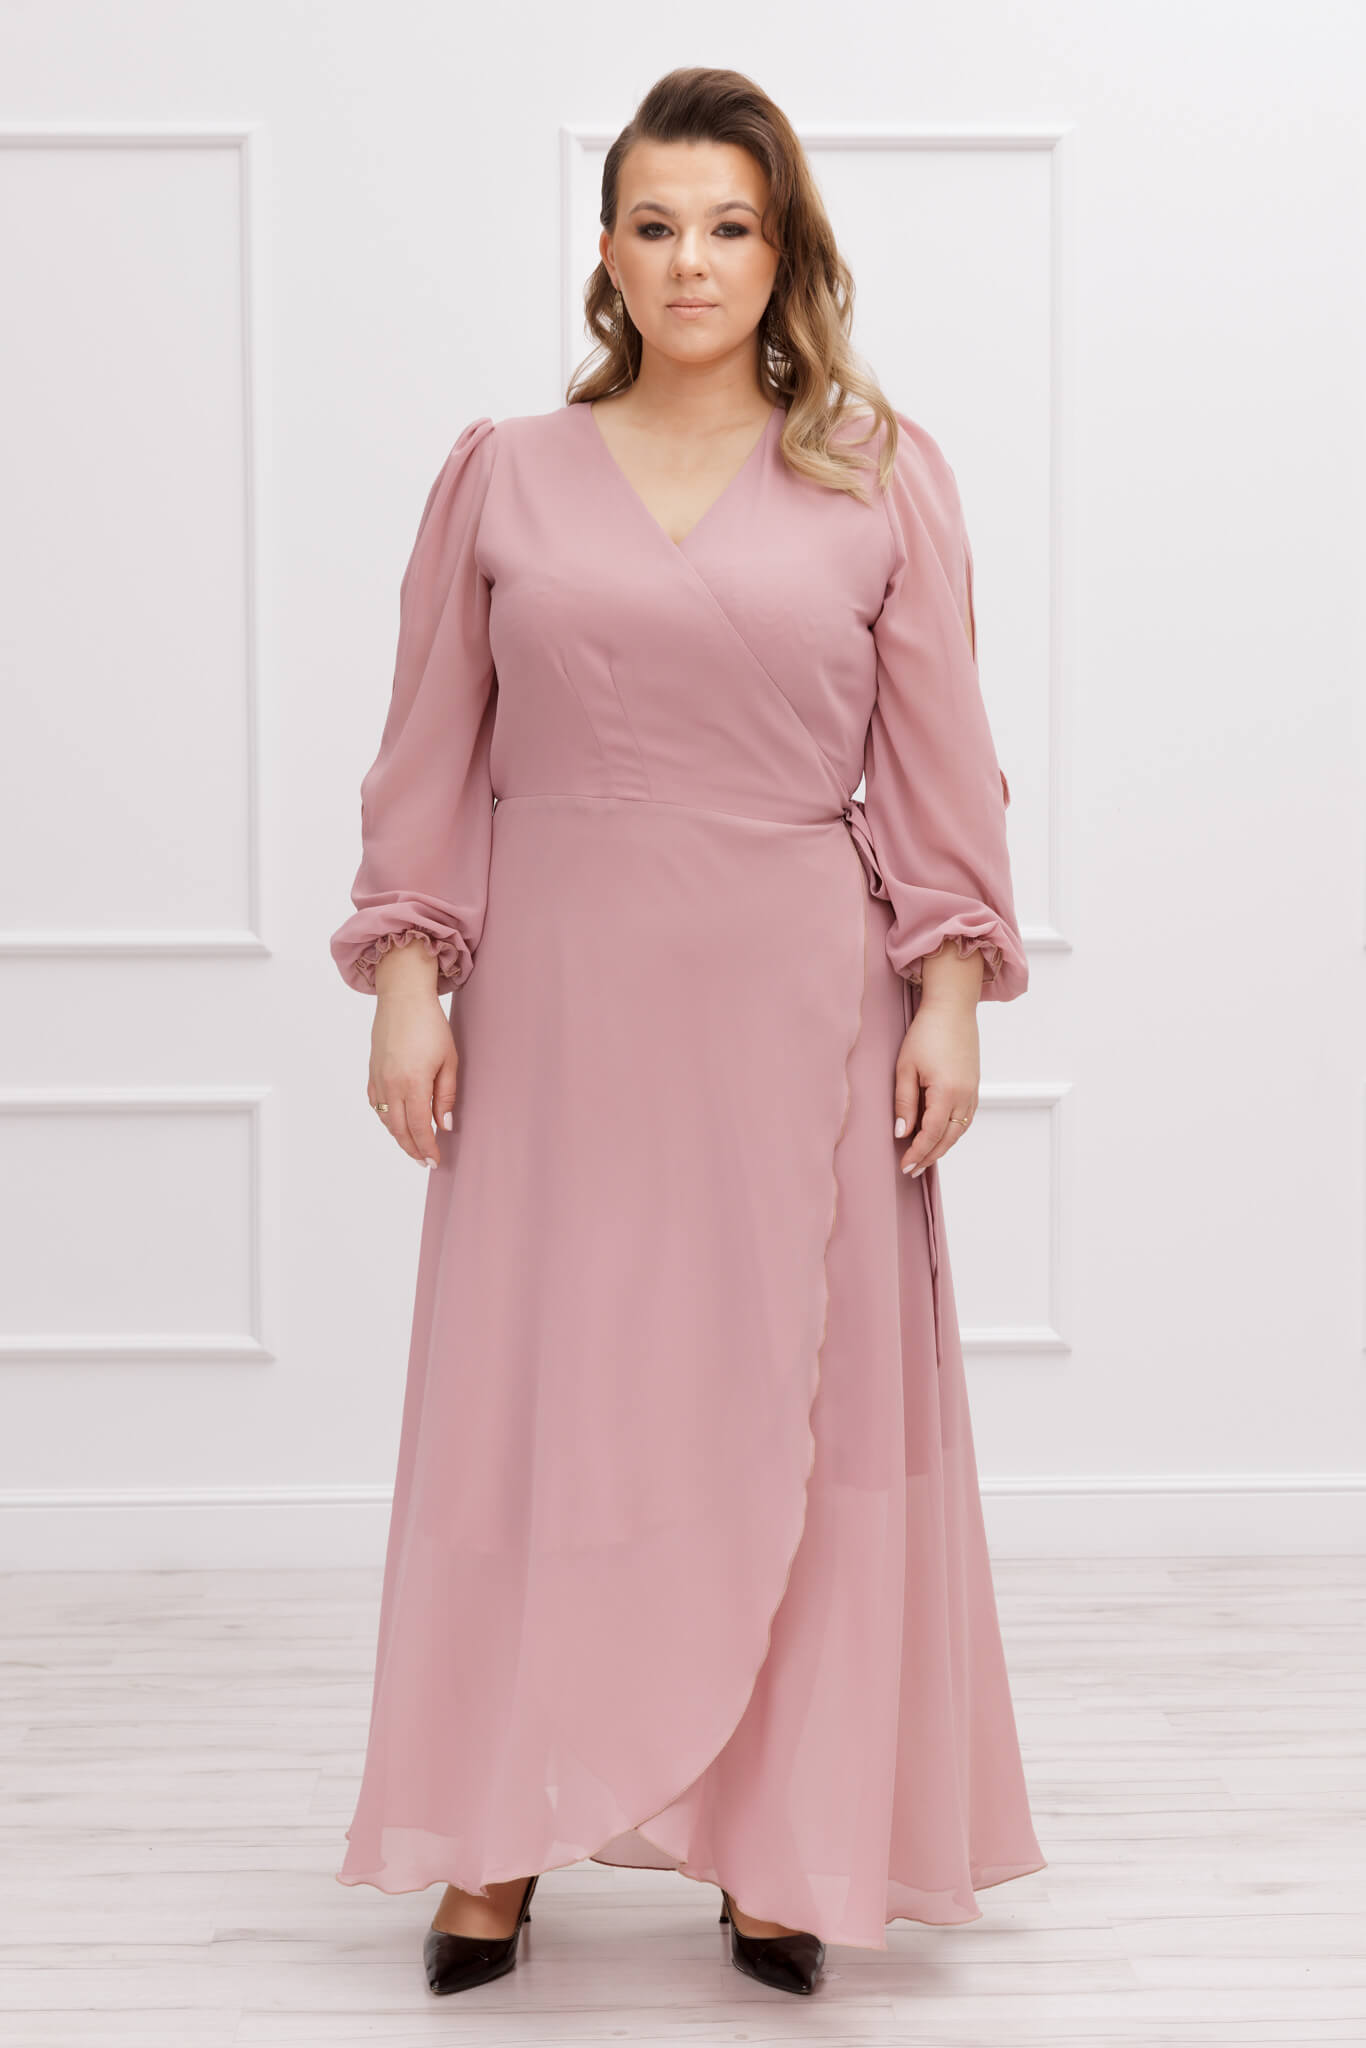 Sukienka Szyfonowa długa sukienka Nikole na wesele w kolorze pudrowego różu plus size xxl